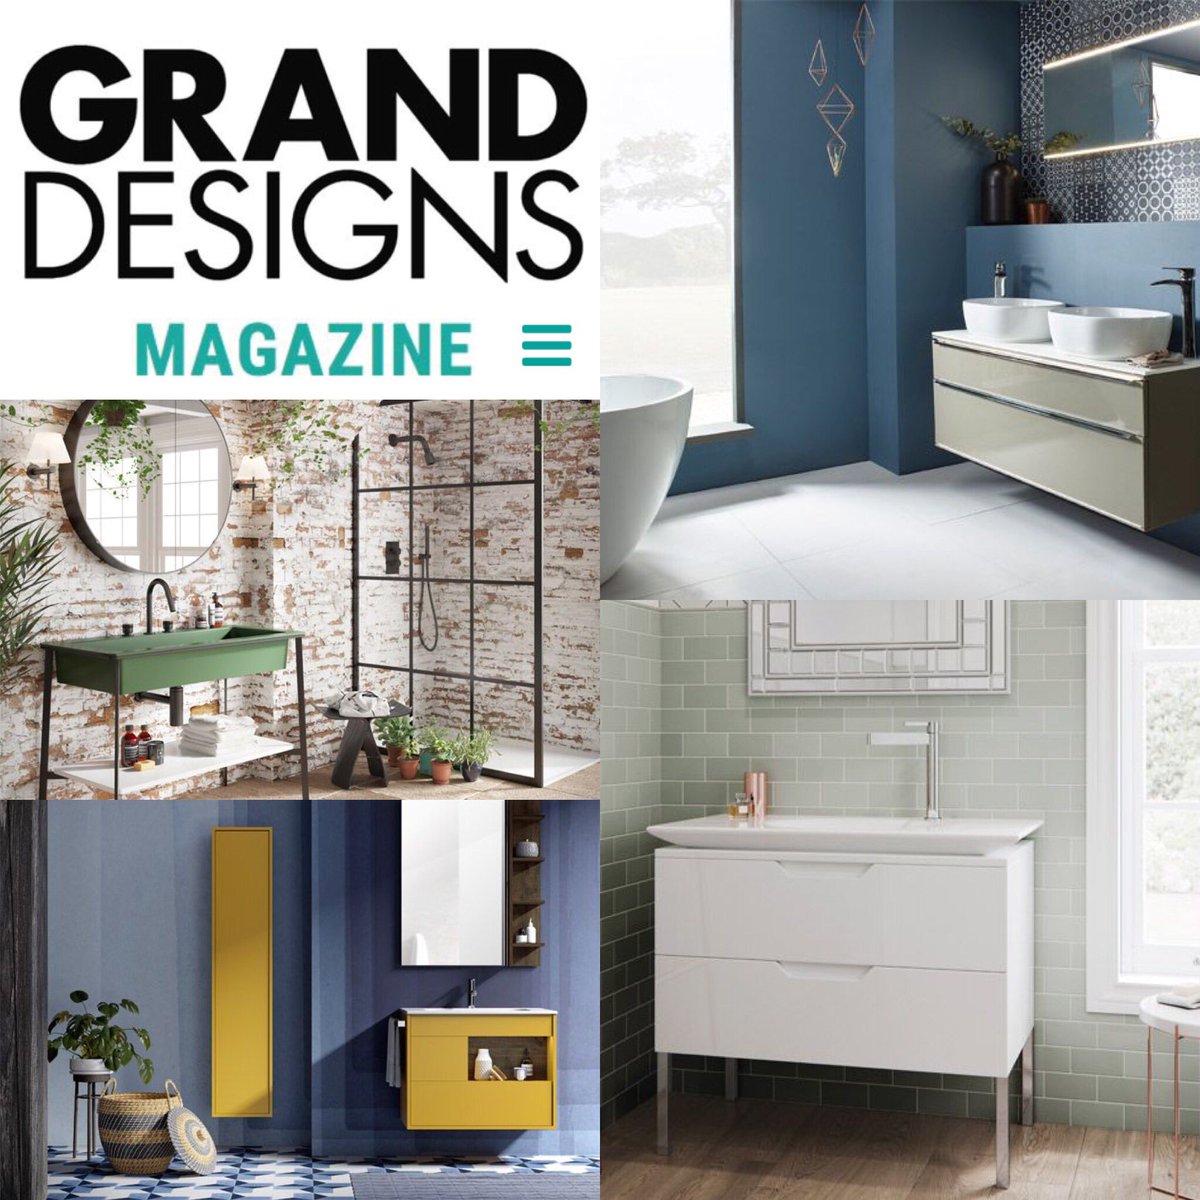 granddesignsmagazine.com/home-improveme… #granddesigns #designtricks #smallspaces #interiordesign #bathroomdesign #design #granddesignmagazine #tricksofthetrade                        

juliekentinteriors.com